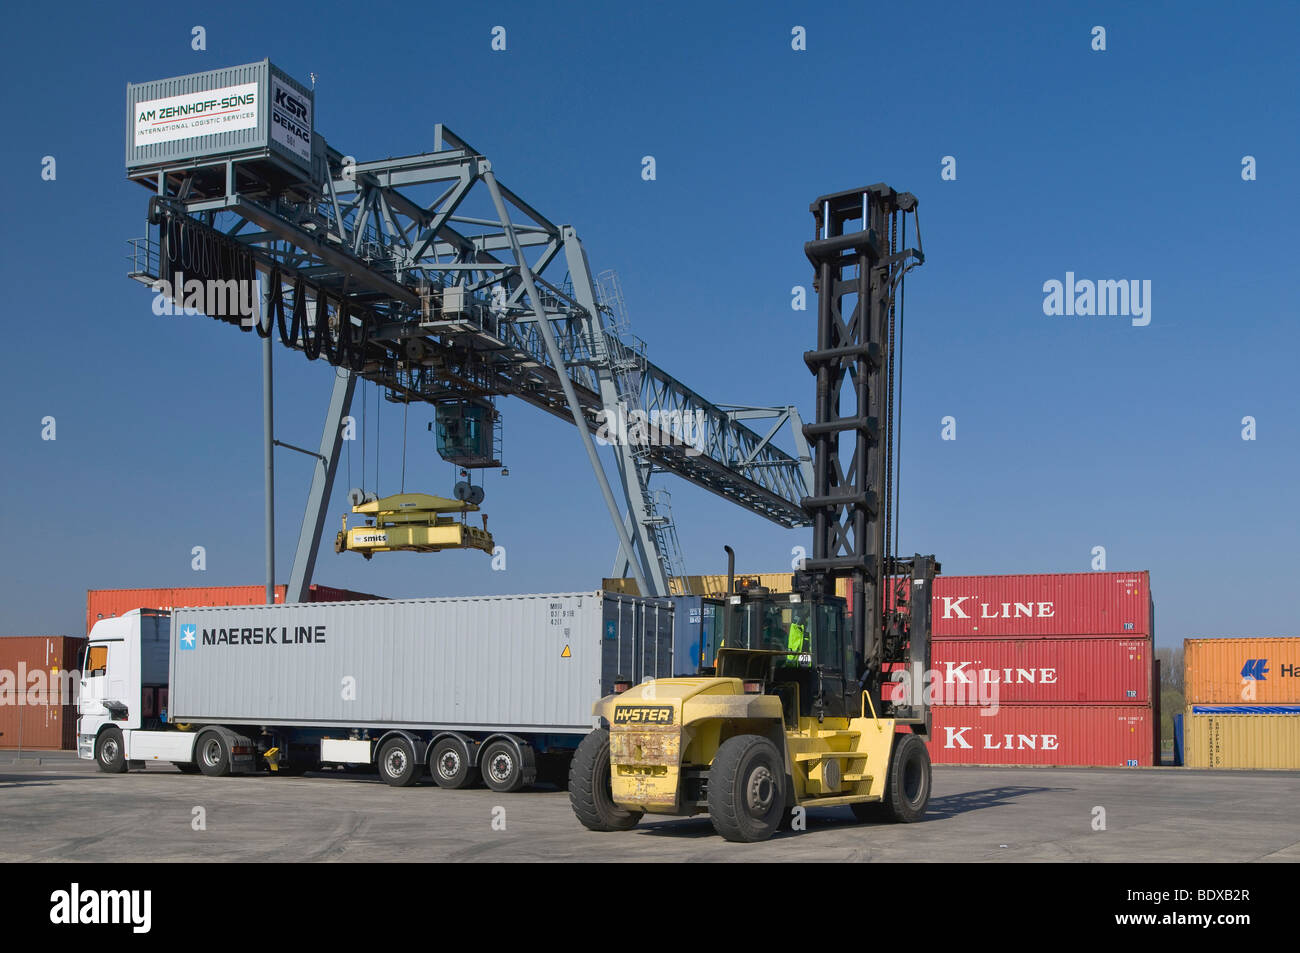 Terminale per container Bonn, carrello essendo caricato con un 40 piedi di contenitore da un gantry crane, Contenitore carrello nella parte anteriore, Nort Foto Stock